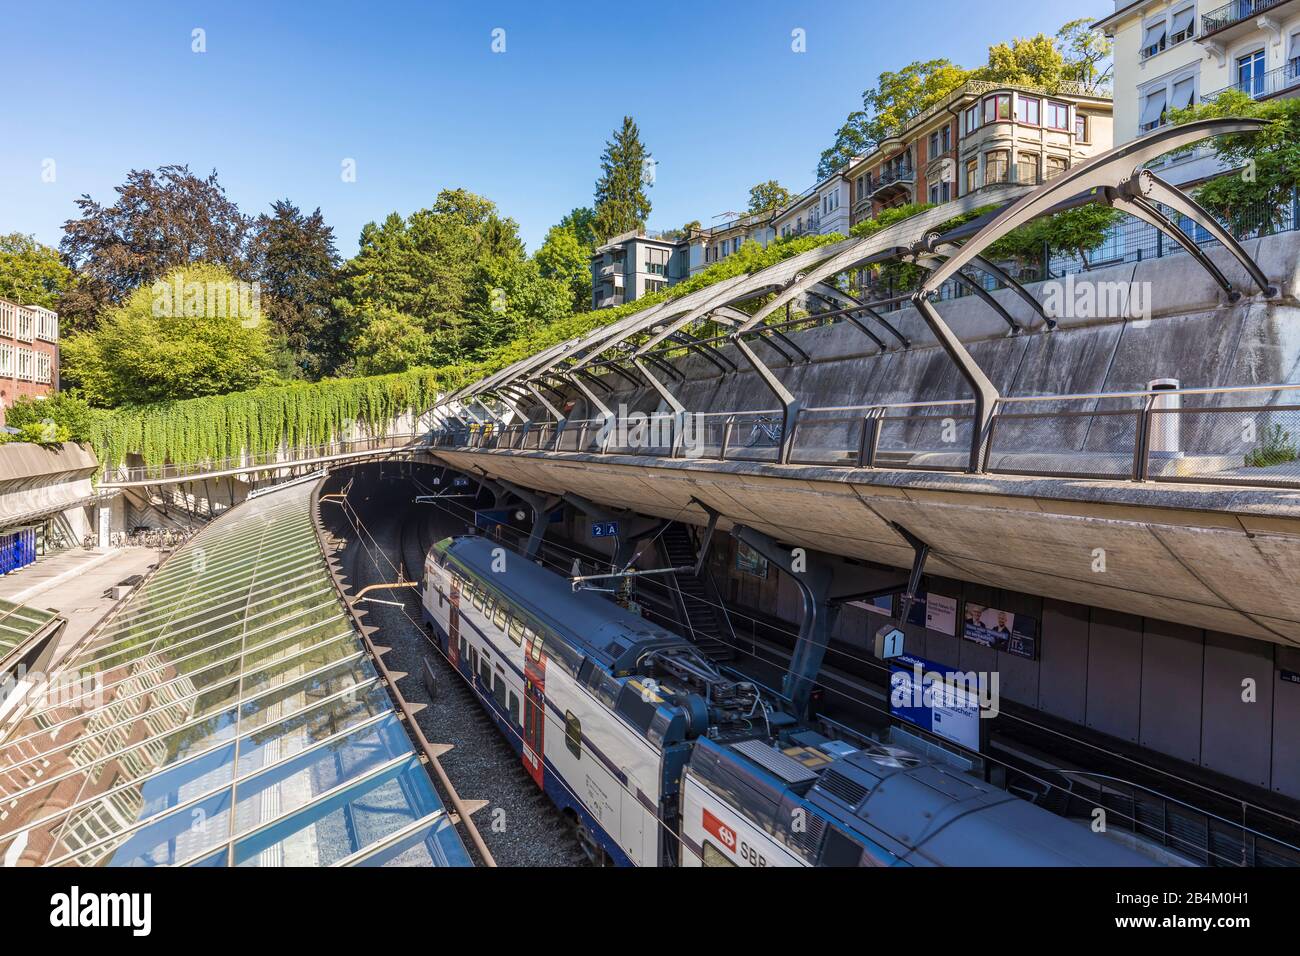 Switzerland, Canton of Zurich, Zurich, Zurich Stadelhofen station, architect Santiago Calatrava Stock Photo